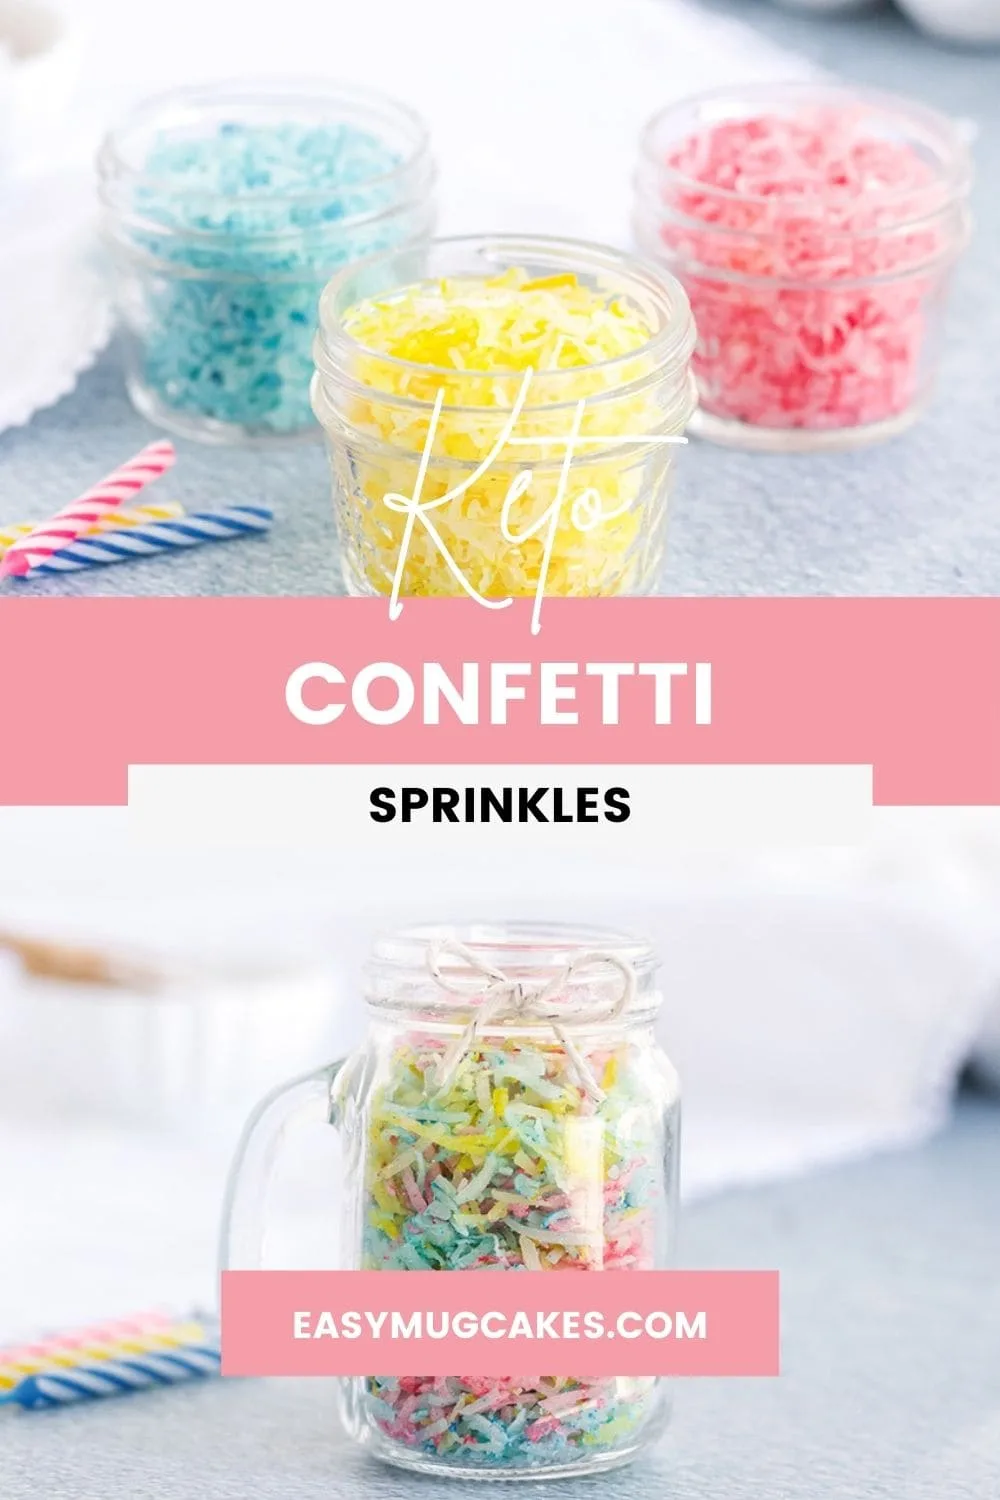 Colored coconut for keto confetti sprinkles.